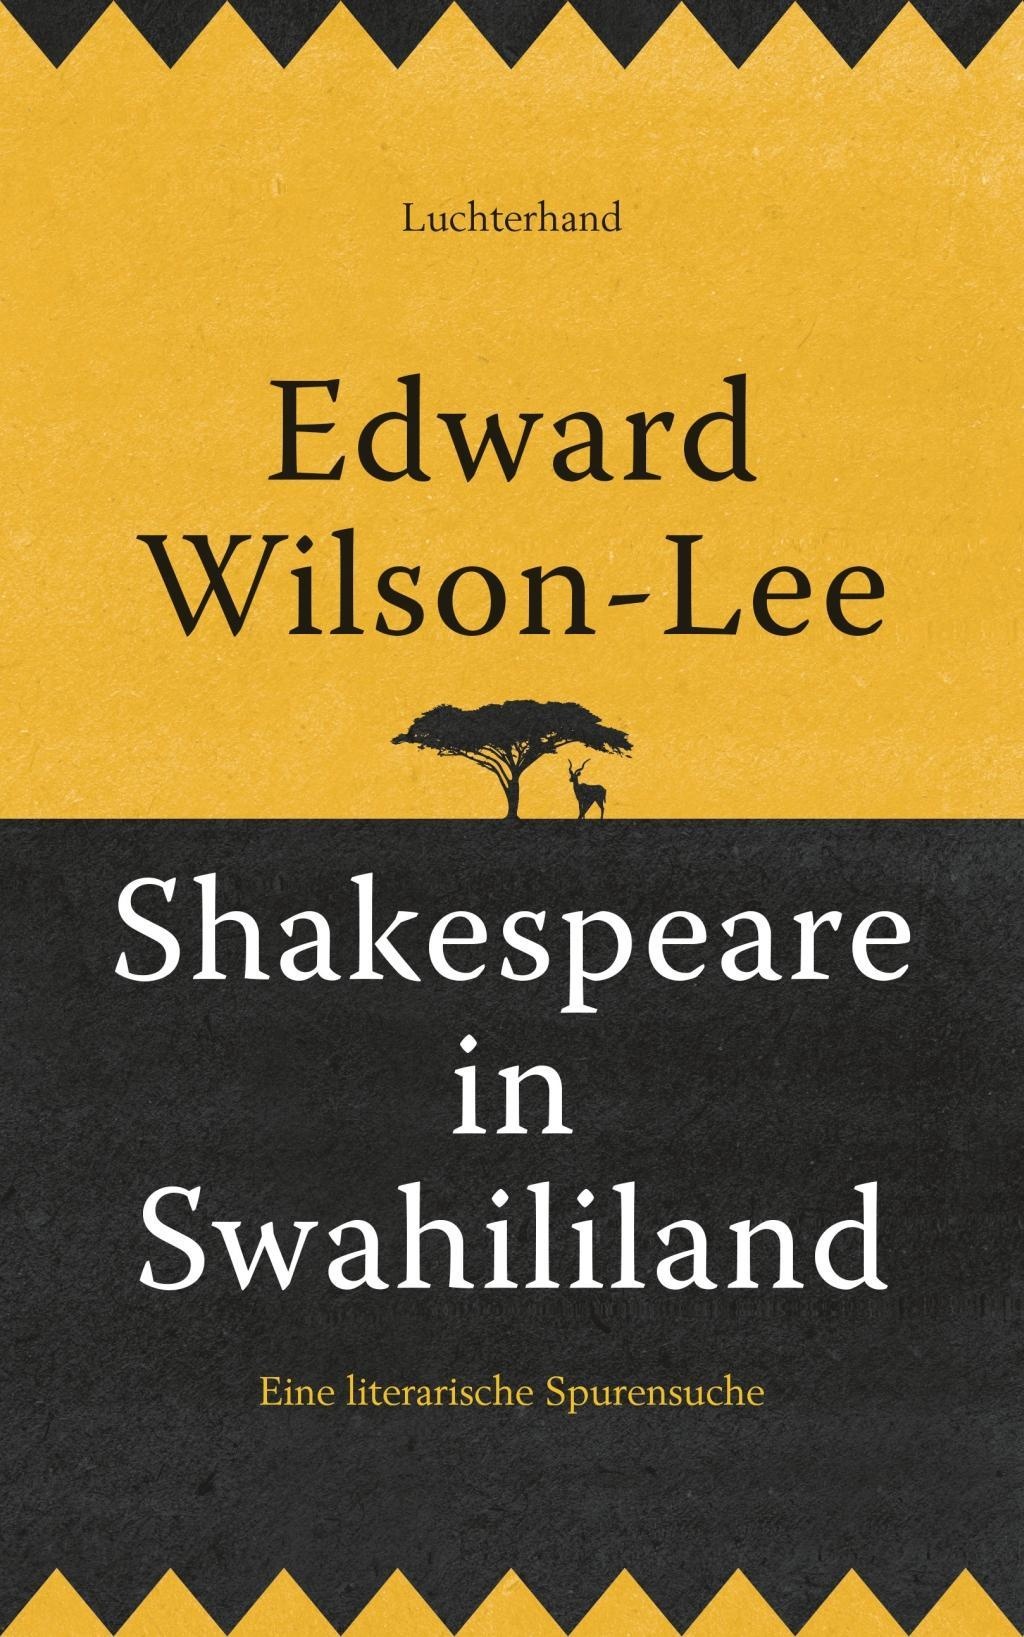 Shakespeare in Swahililand, Sachbücher von Edward Wilson-Lee